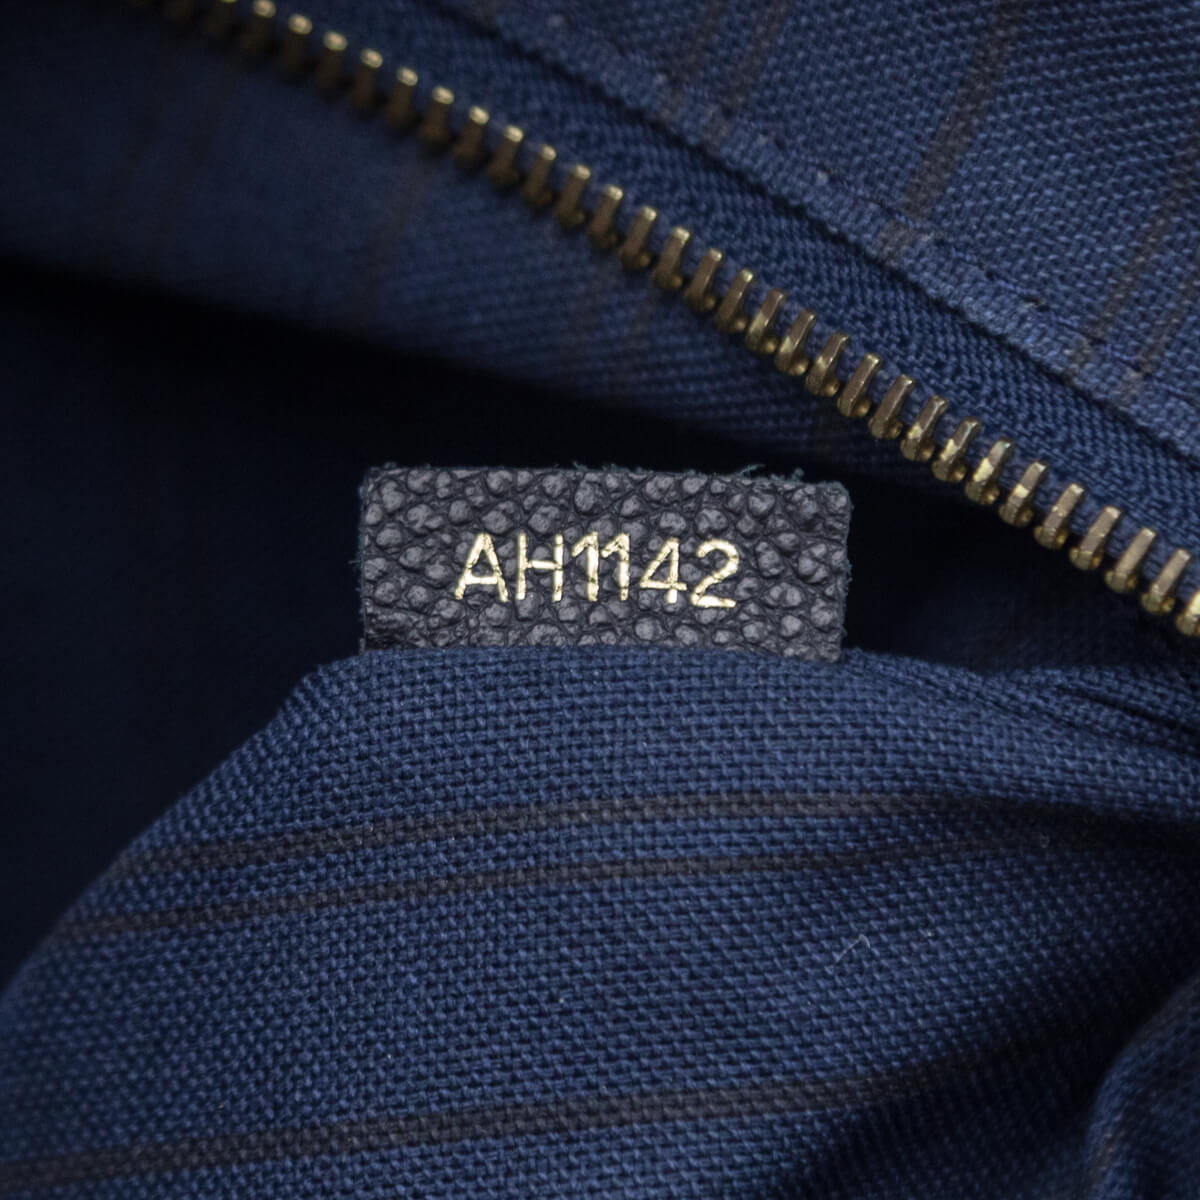 Louis Vuitton Monogram Empreinte Citadine PM w/ Pouch - Blue Totes,  Handbags - LOU784982